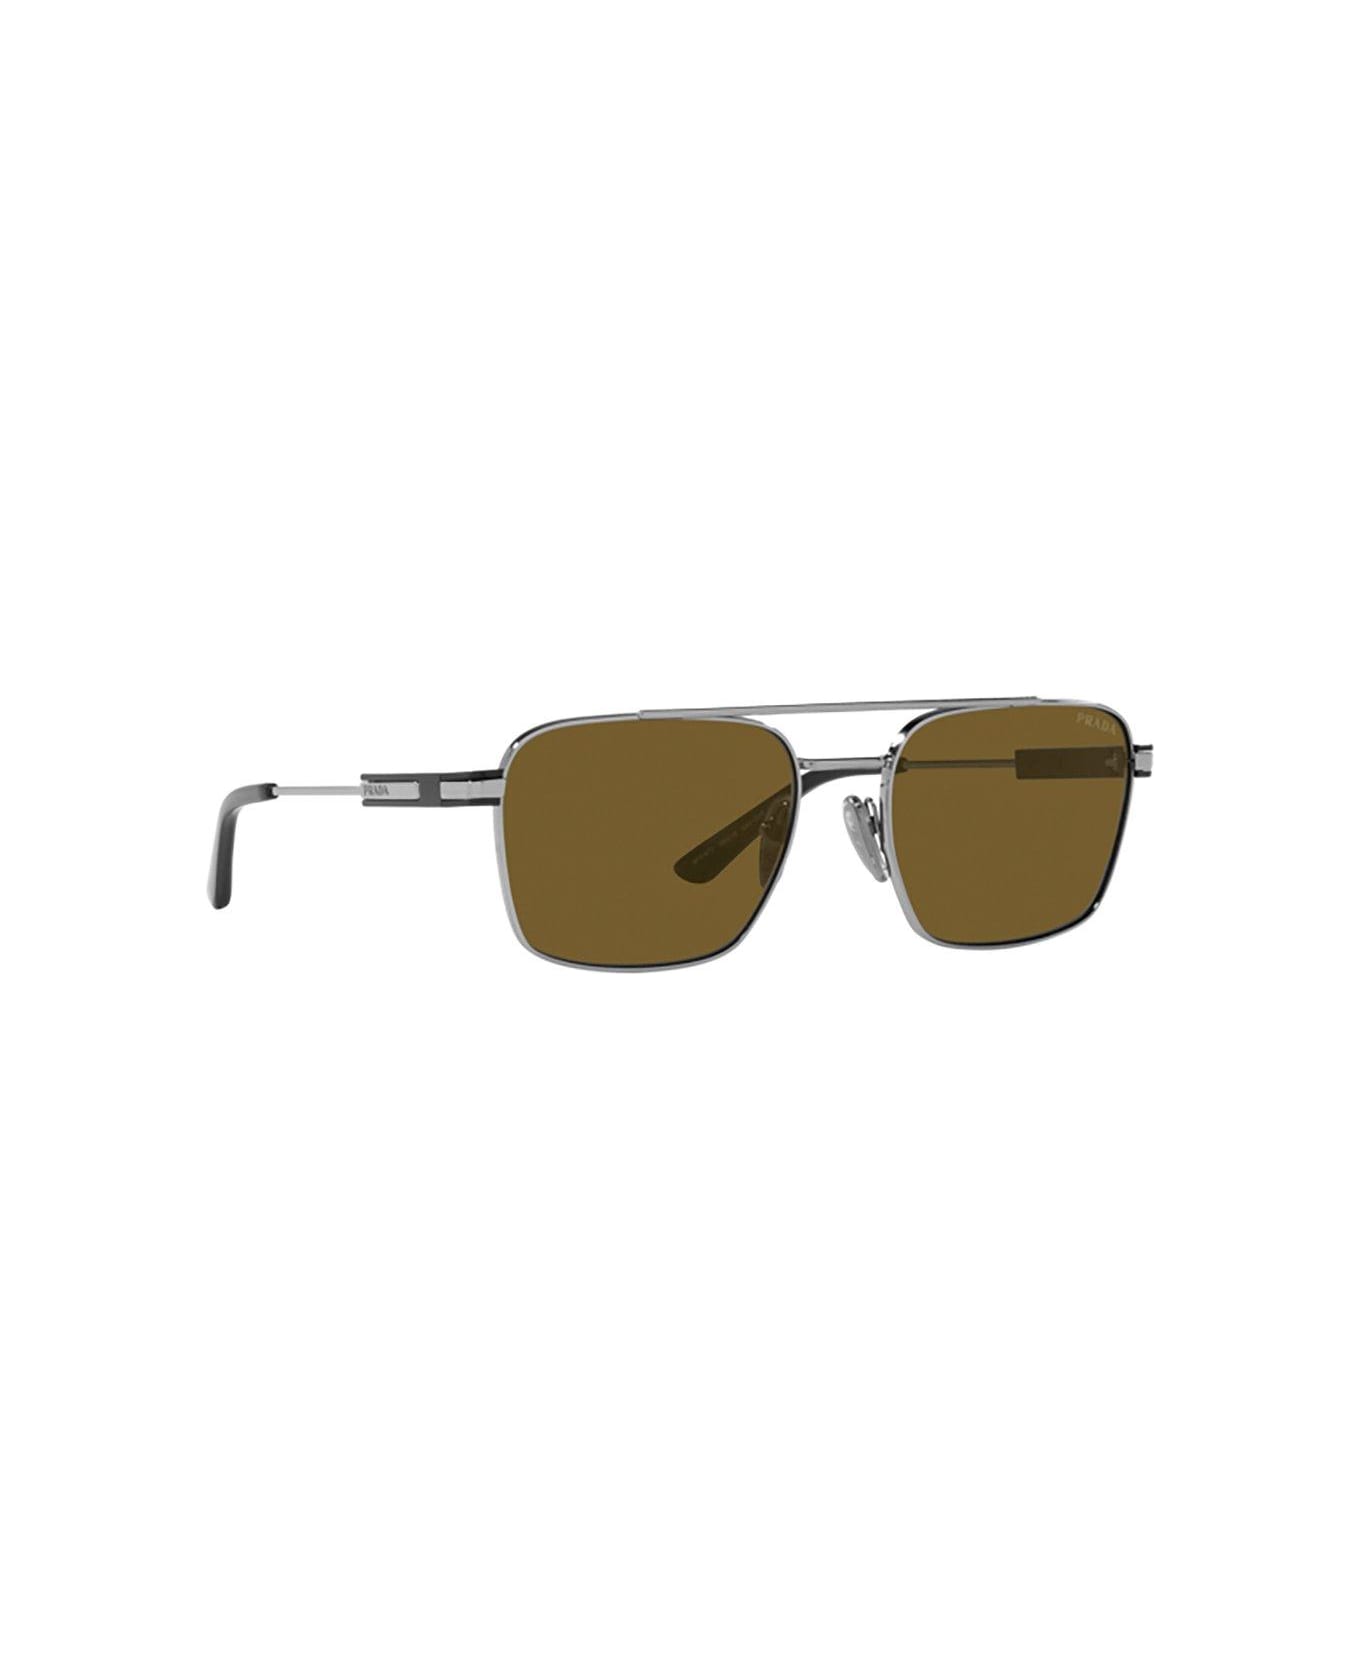 Prada Eyewear Square-frame Sunglasses Sunglasses - 5AV01T Gunmetal